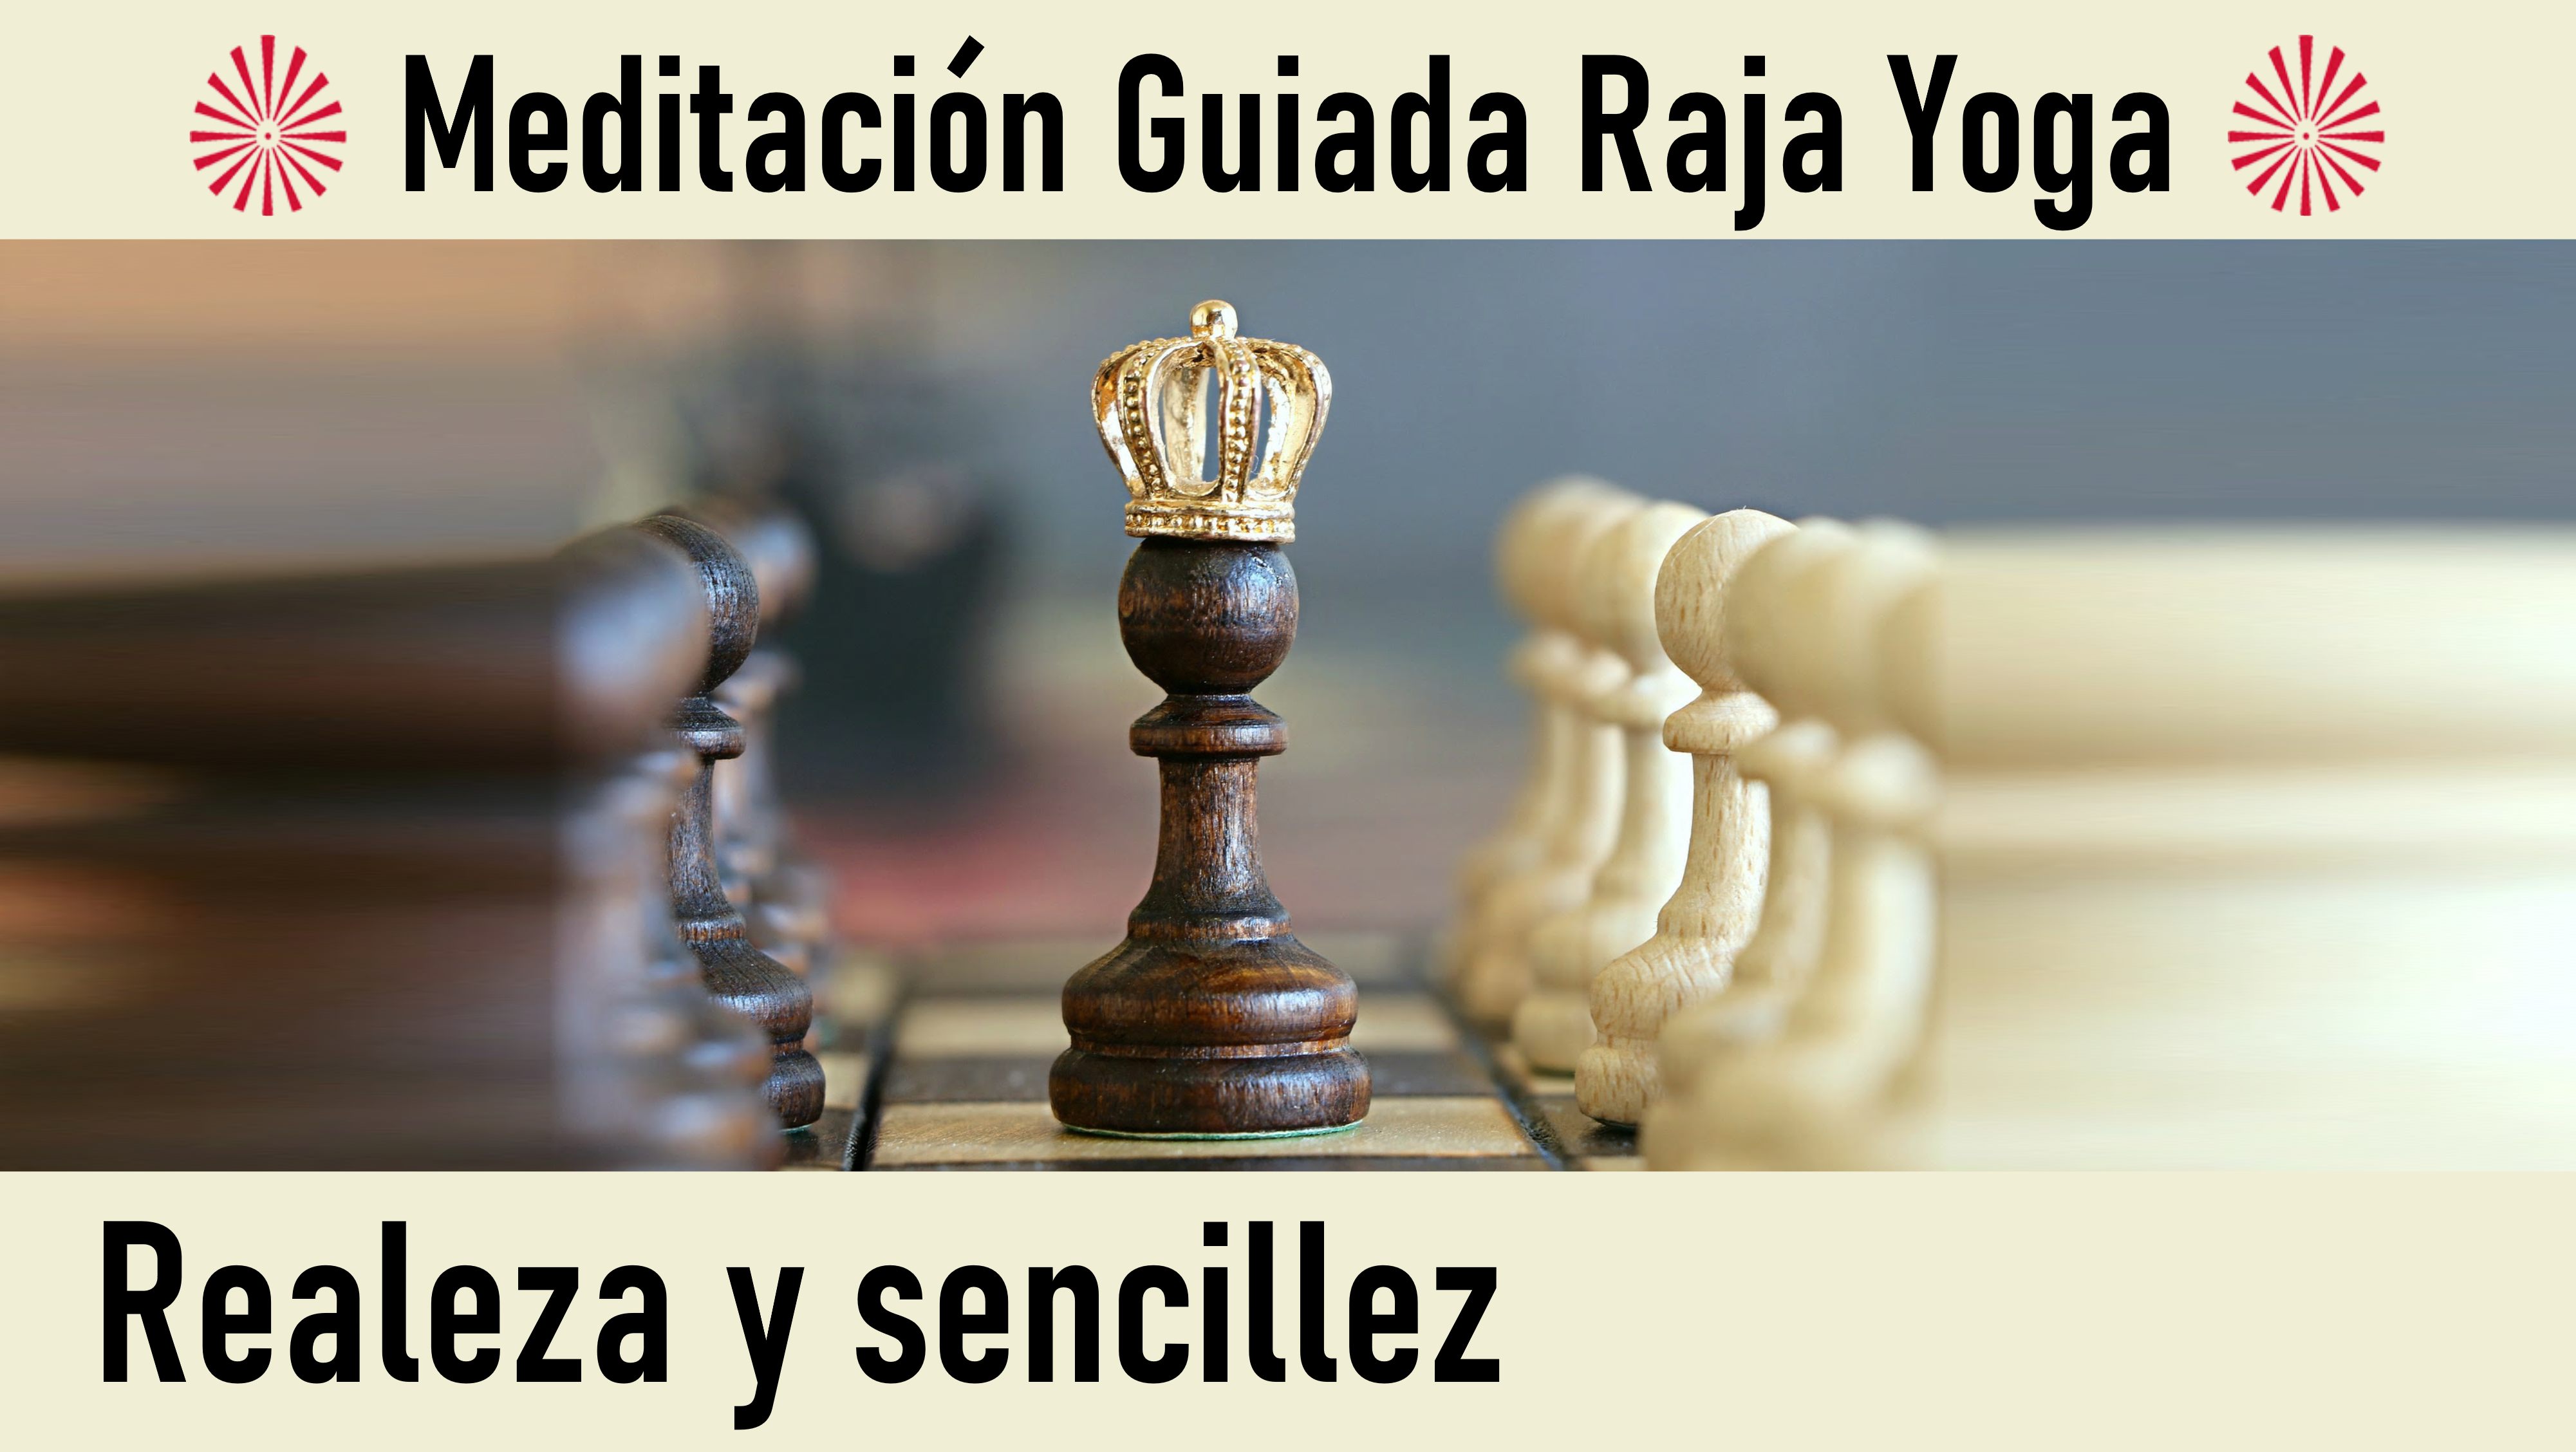 Meditación Raja Yoga: Realeza y sencillez (31 Julio 2020) On-line desde Barcelona